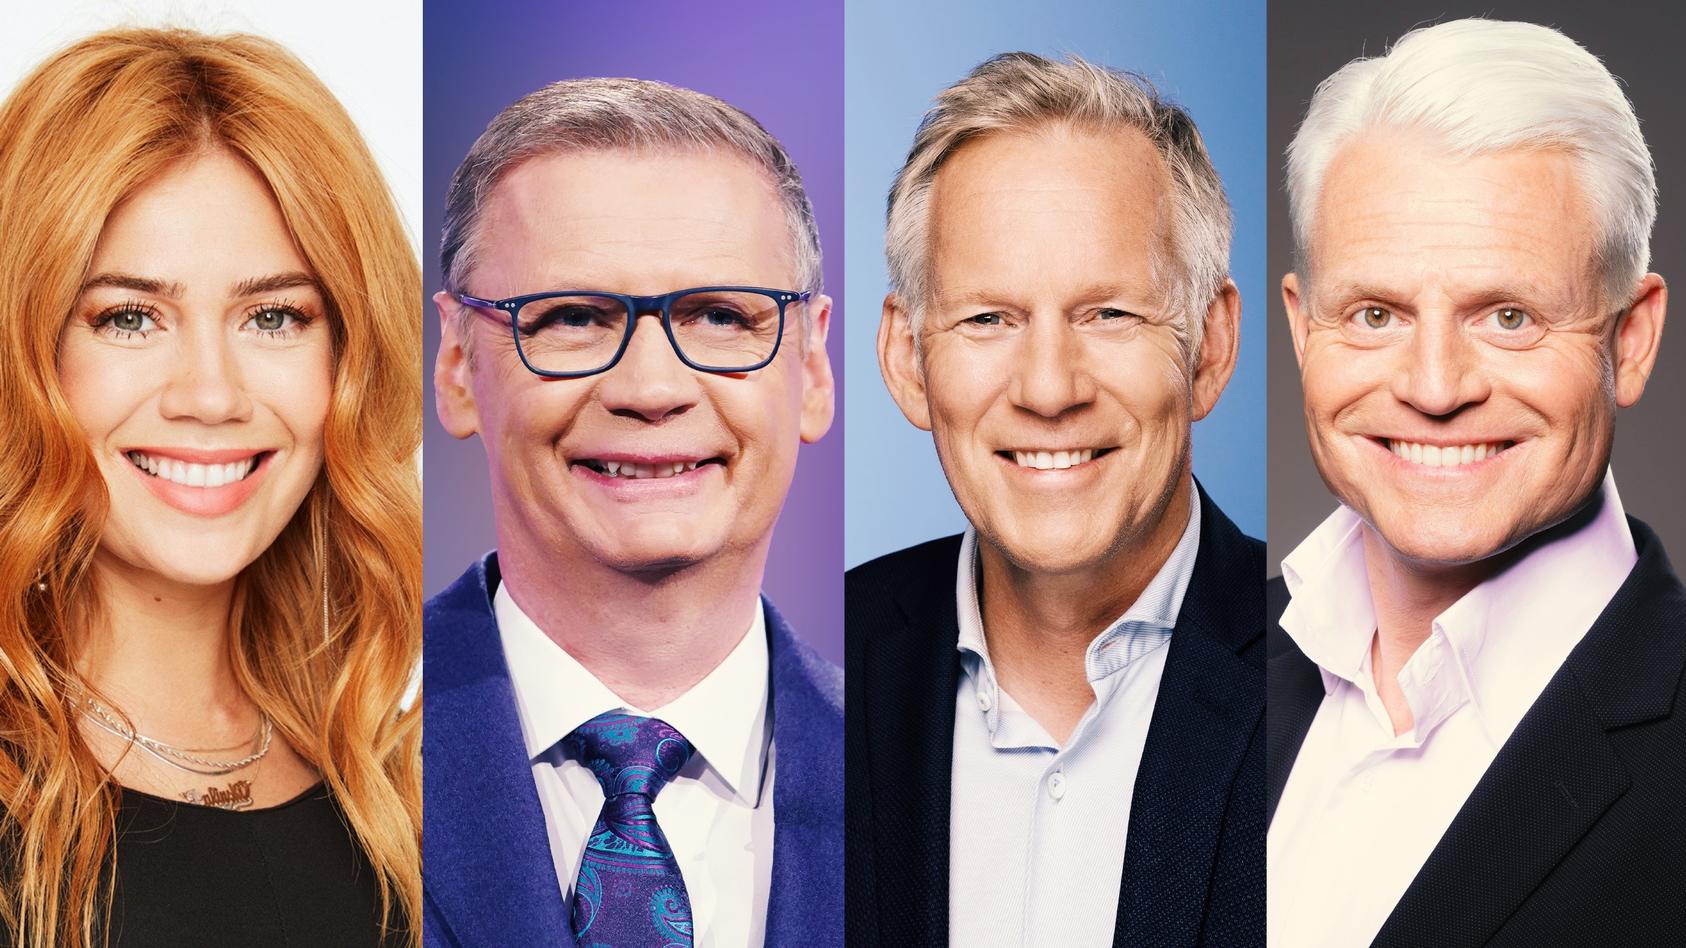 RTL vereint Deutschlands größte Quiz-Master in einer neuen Show, moderiert von Palina Rojinski